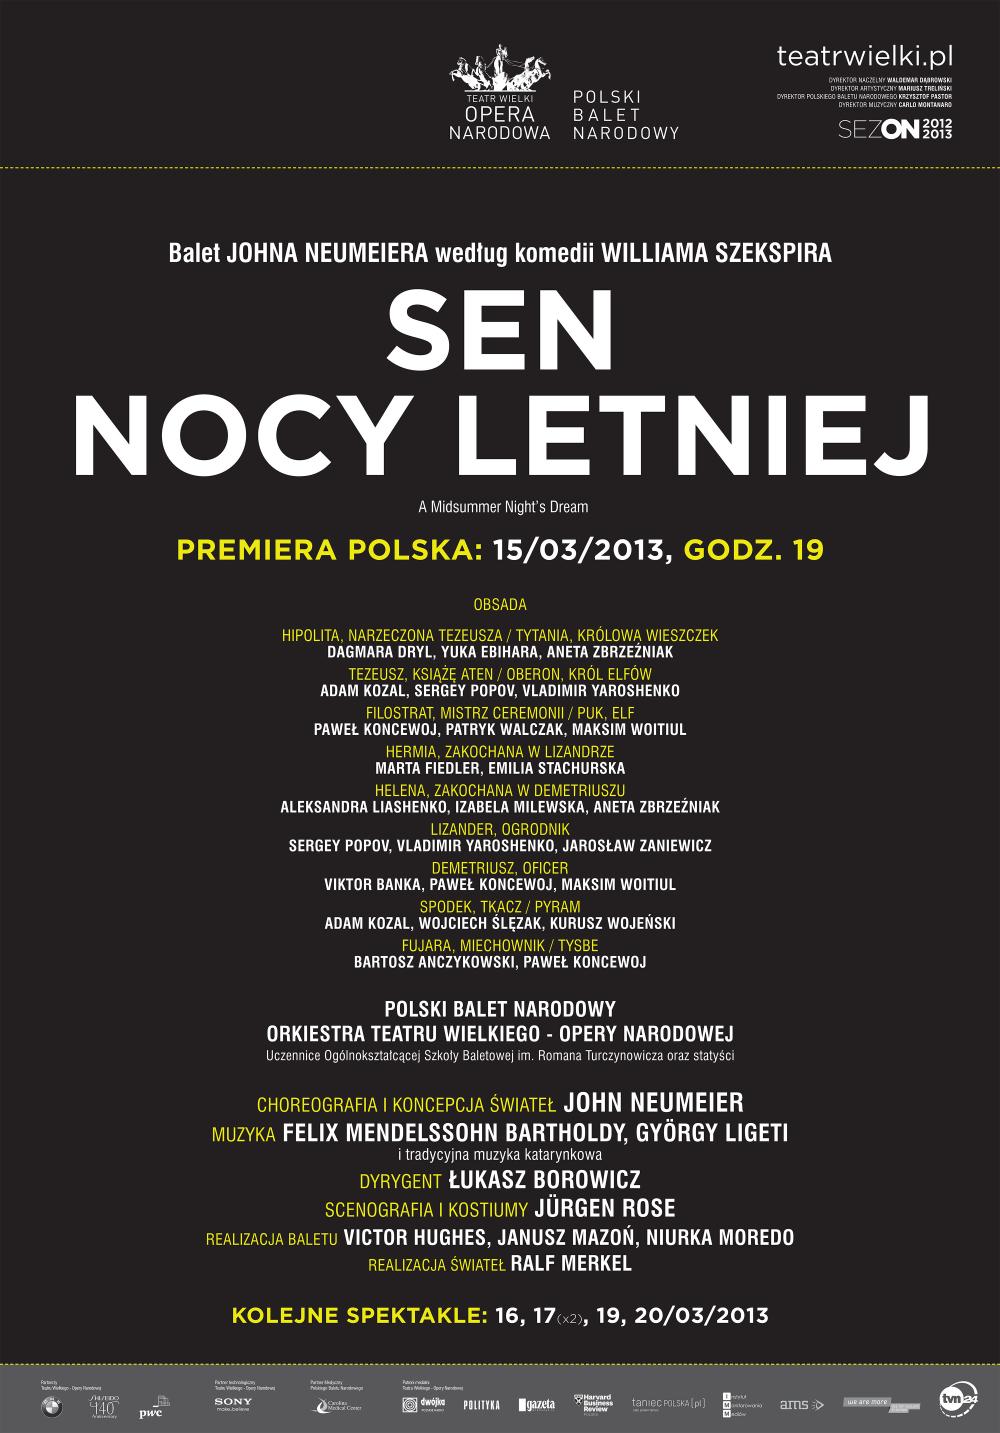 Afisz "Sen nocy letniej" Felix Mendelssohn Bartholdy, György Ligeti / John Neumeier premiera polska 2013-03-15